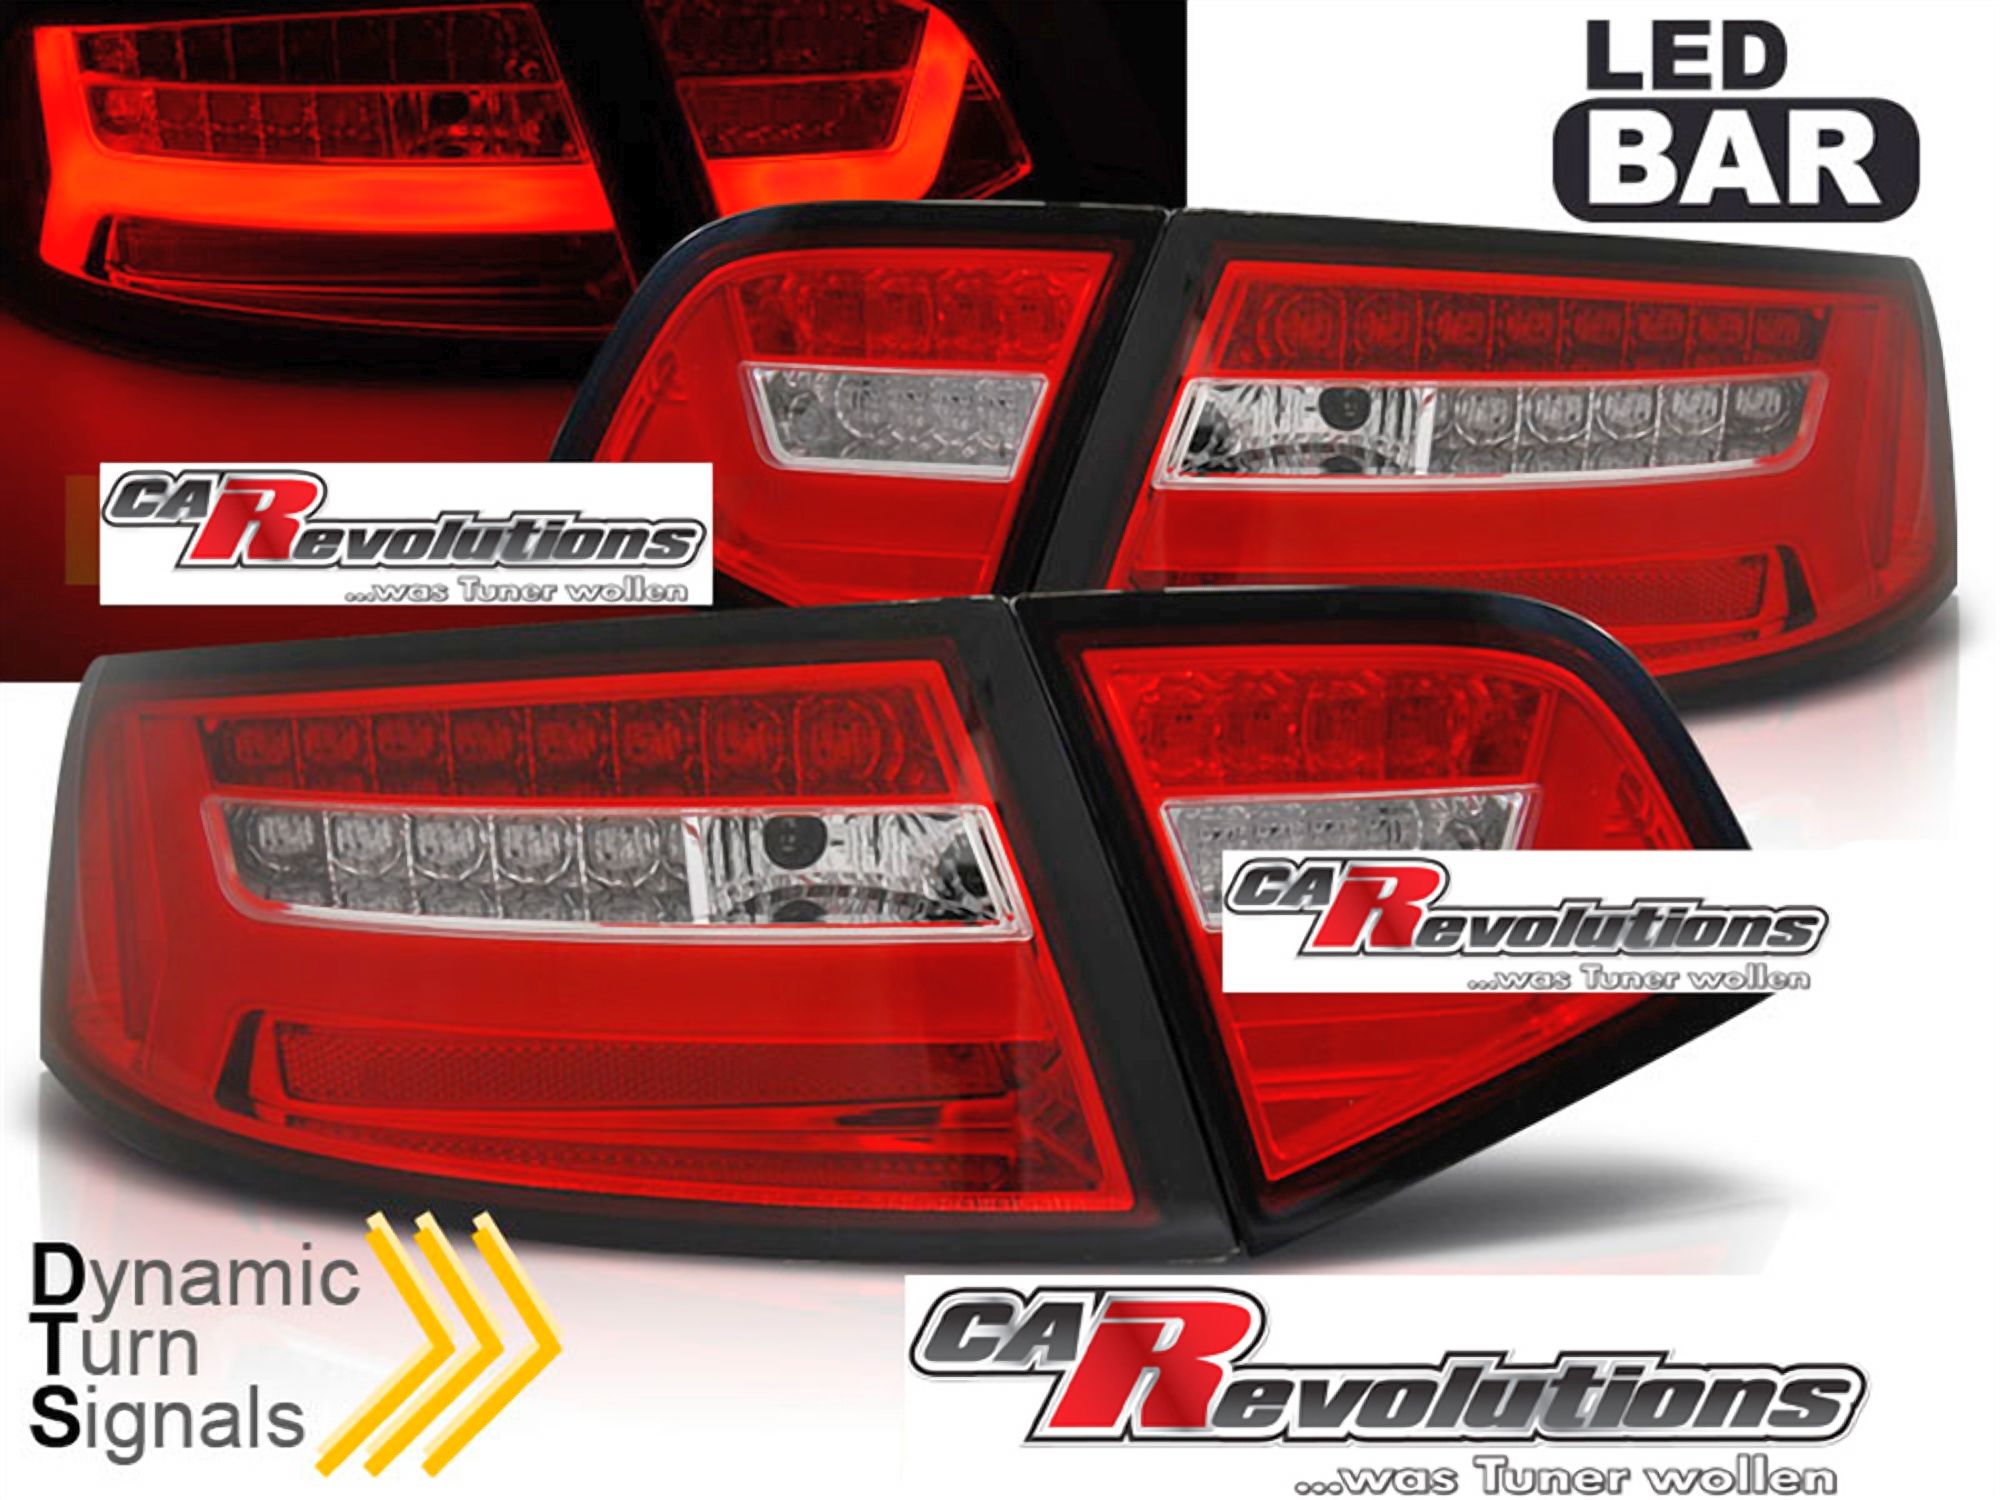 Led Rückleuchten dynamische Blinker S6 Look in rot für Audi A6 C6 4F Limo  2008--2011, Für Audi A6 C6, Für Audi A6, Für Audi, Beleuchtung